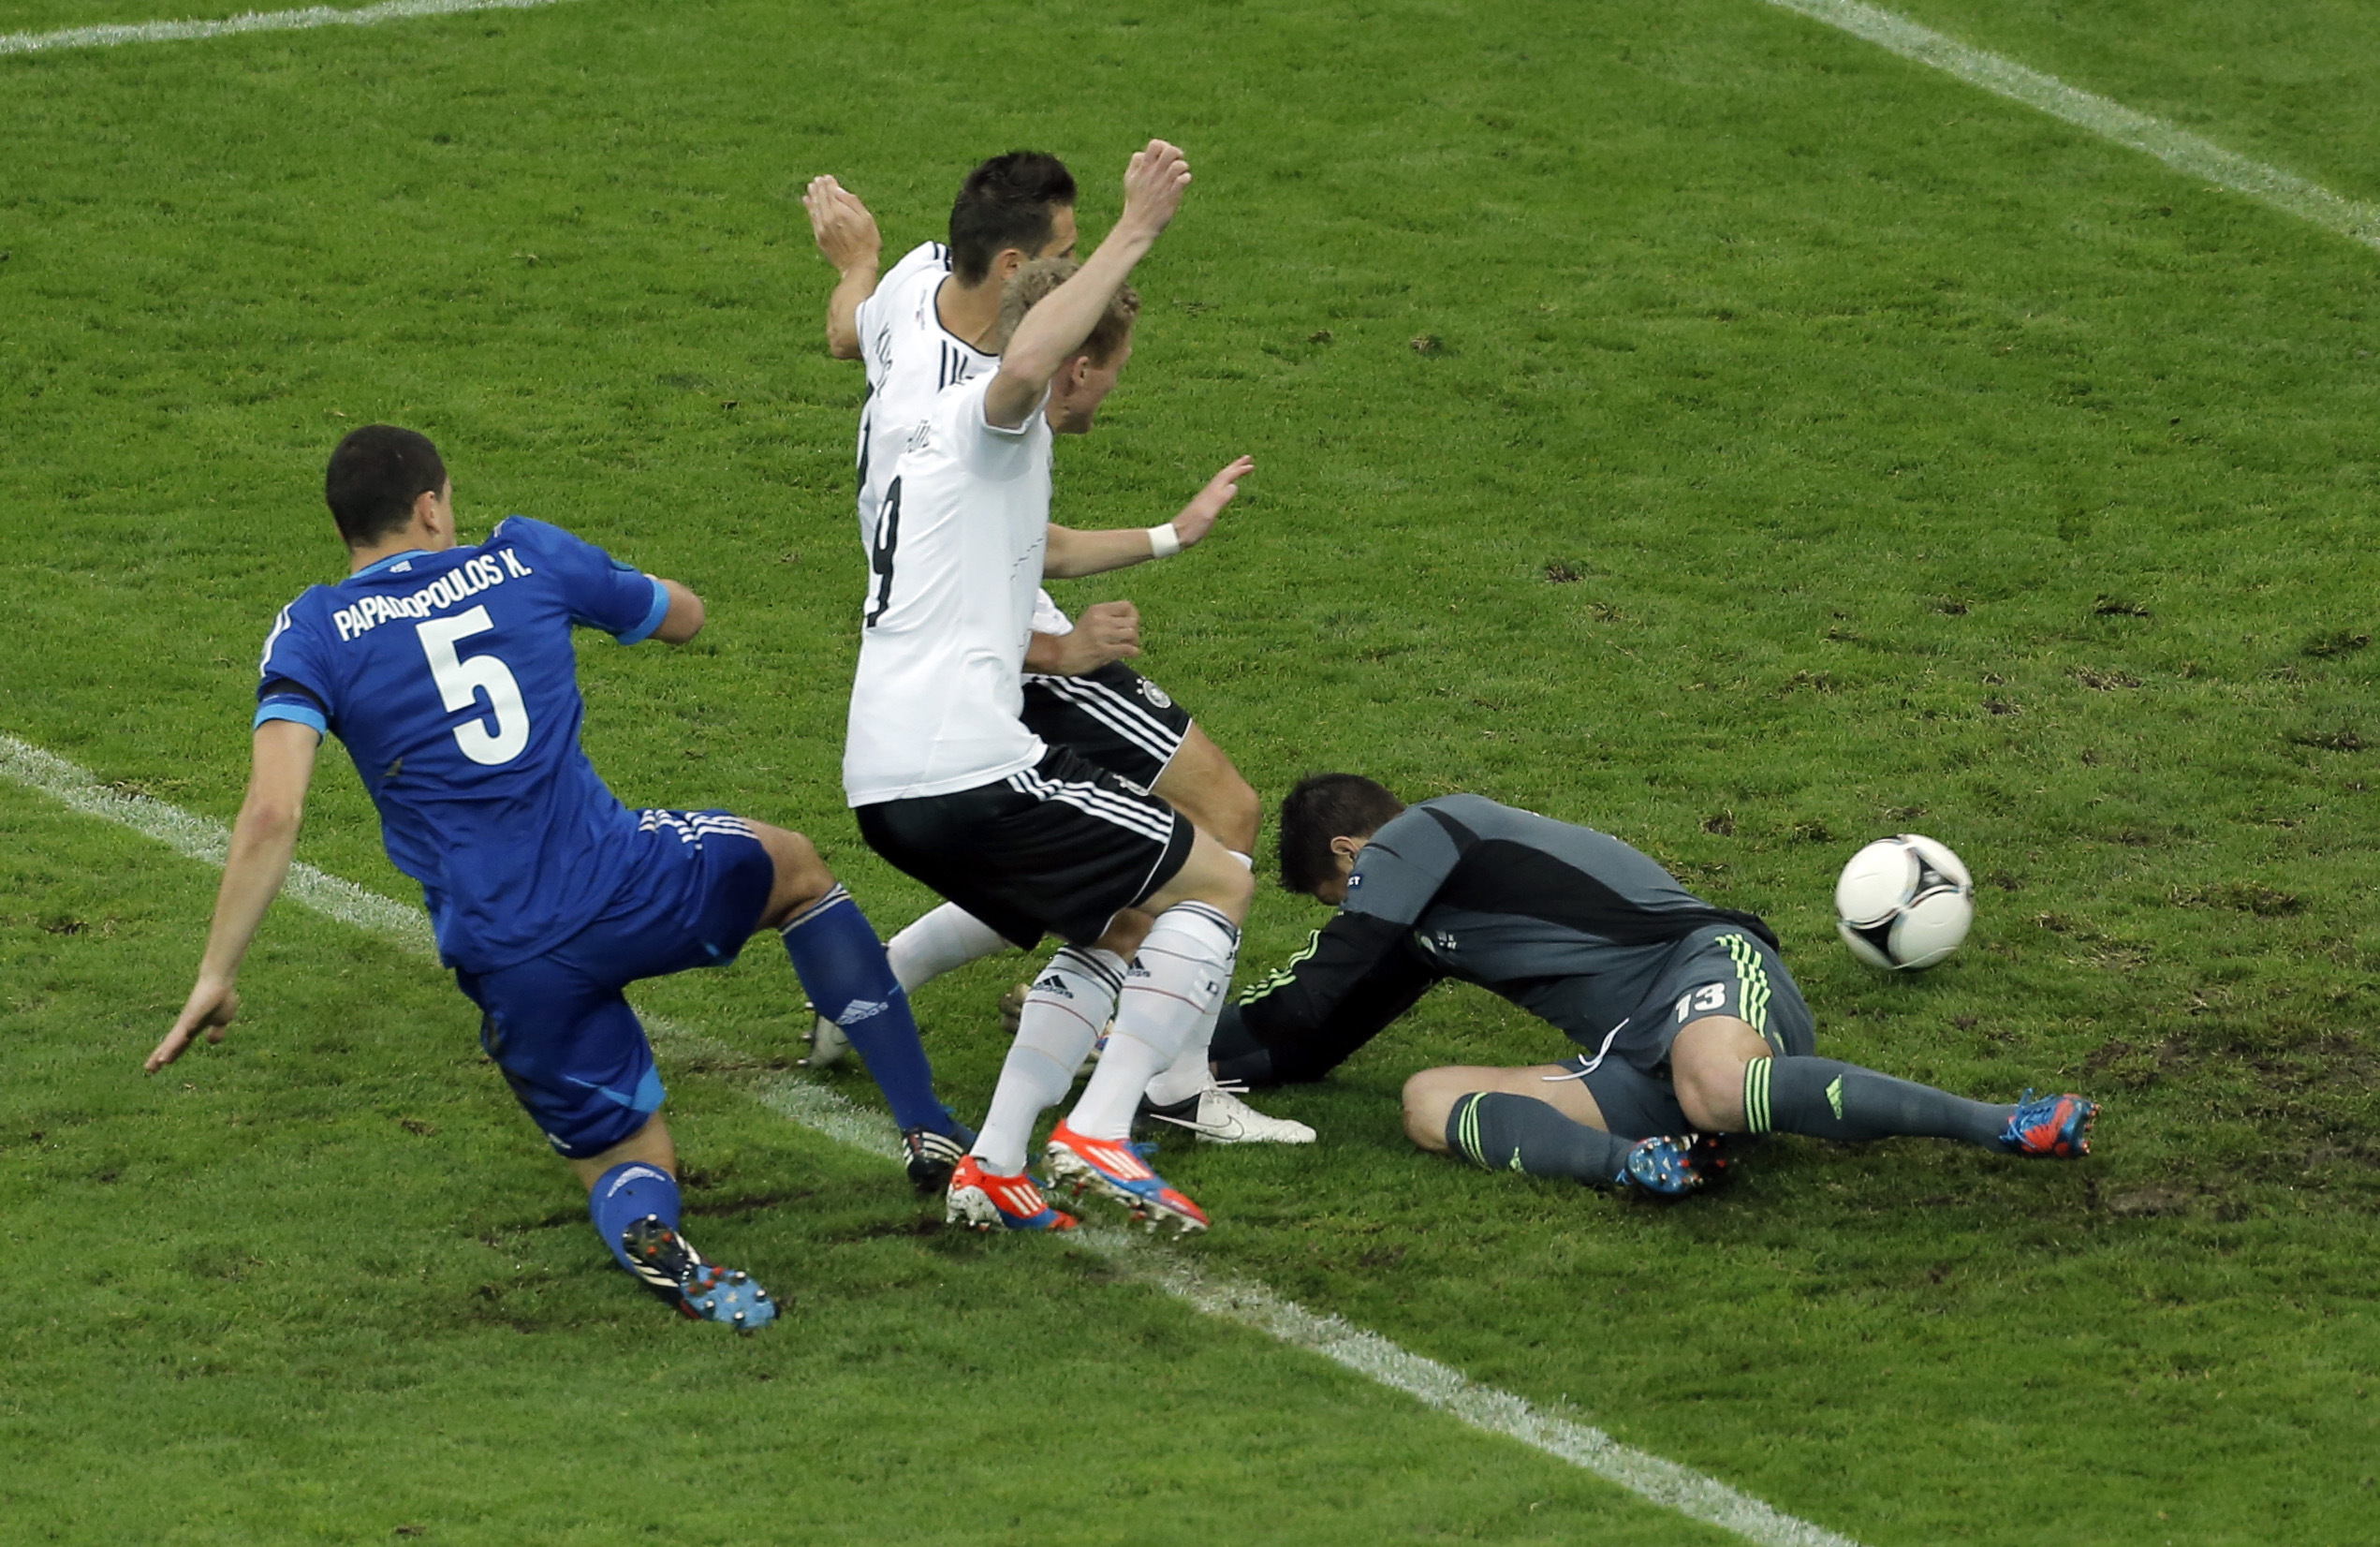 Klose gjorde mål redan i den fjärde minuten men det blåstes av för offside.